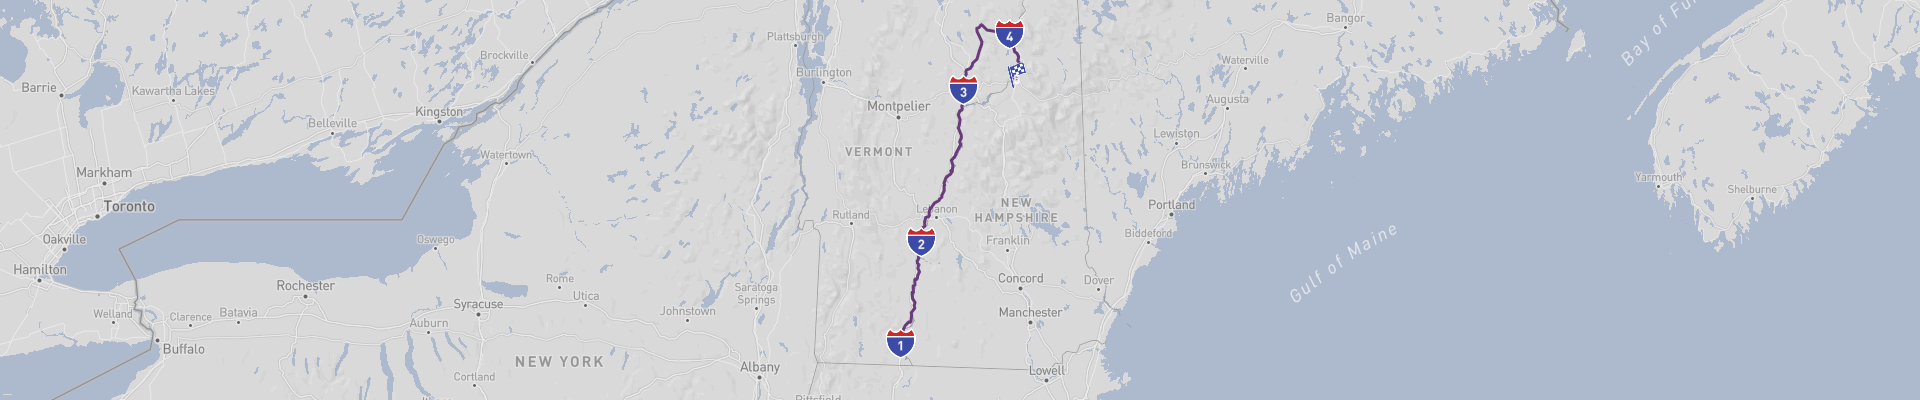 Connecticut Rivier Road Trip